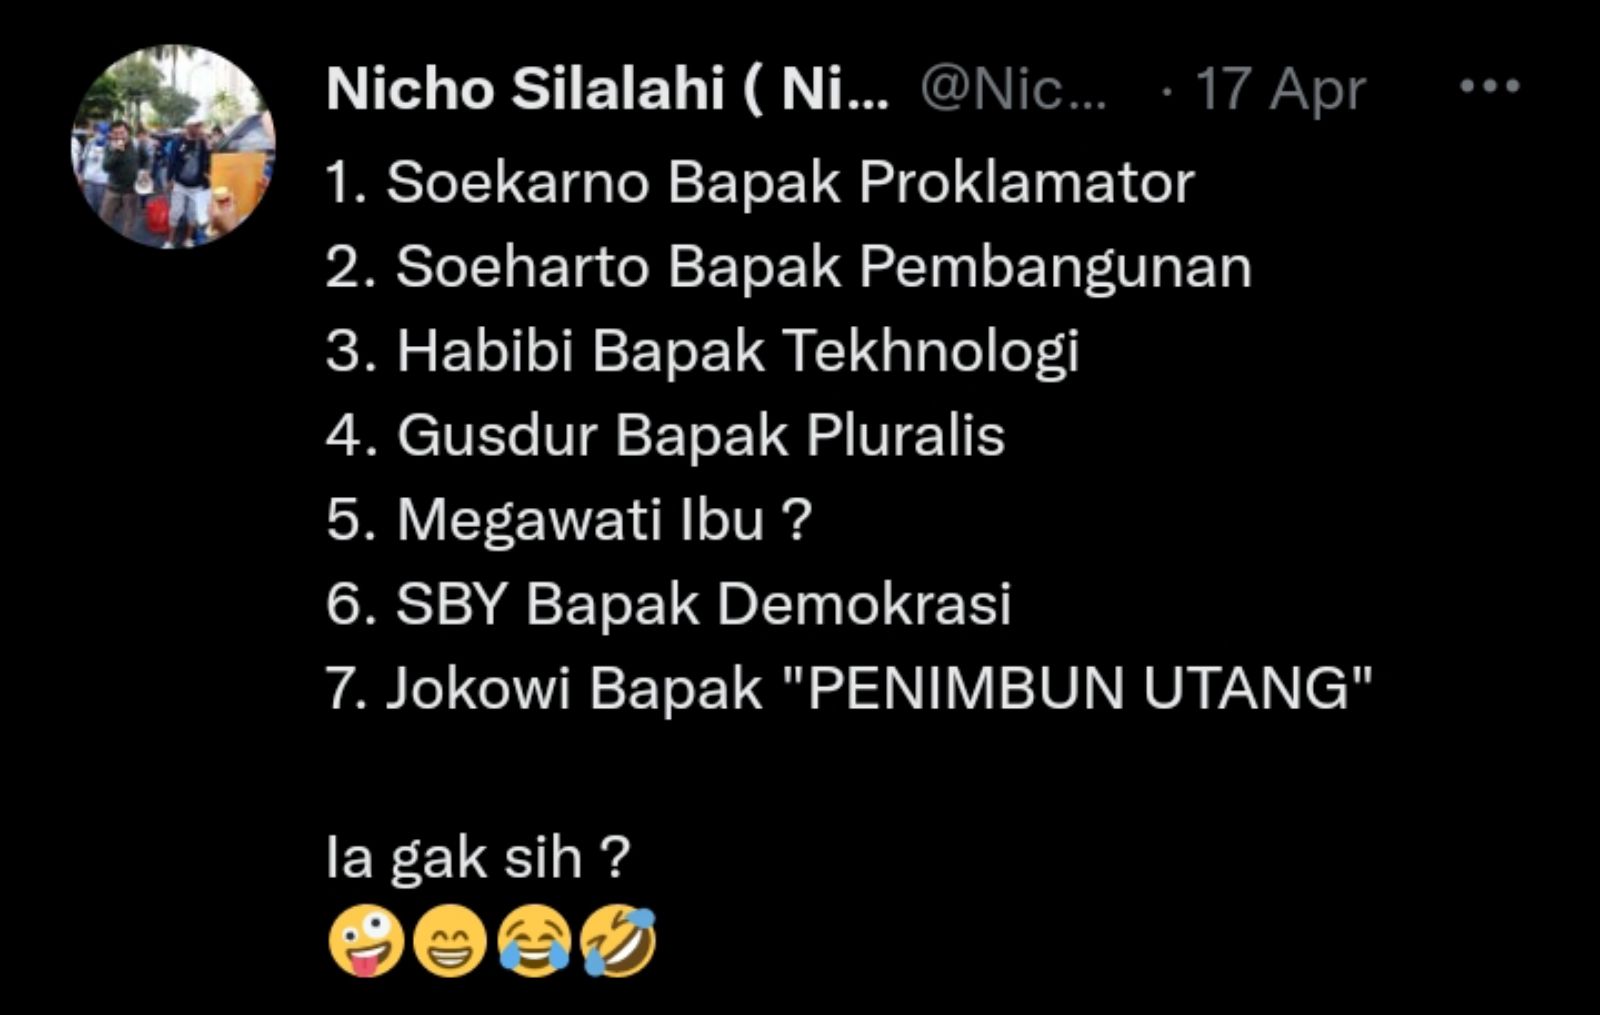 Tweet Nicho Silalahi